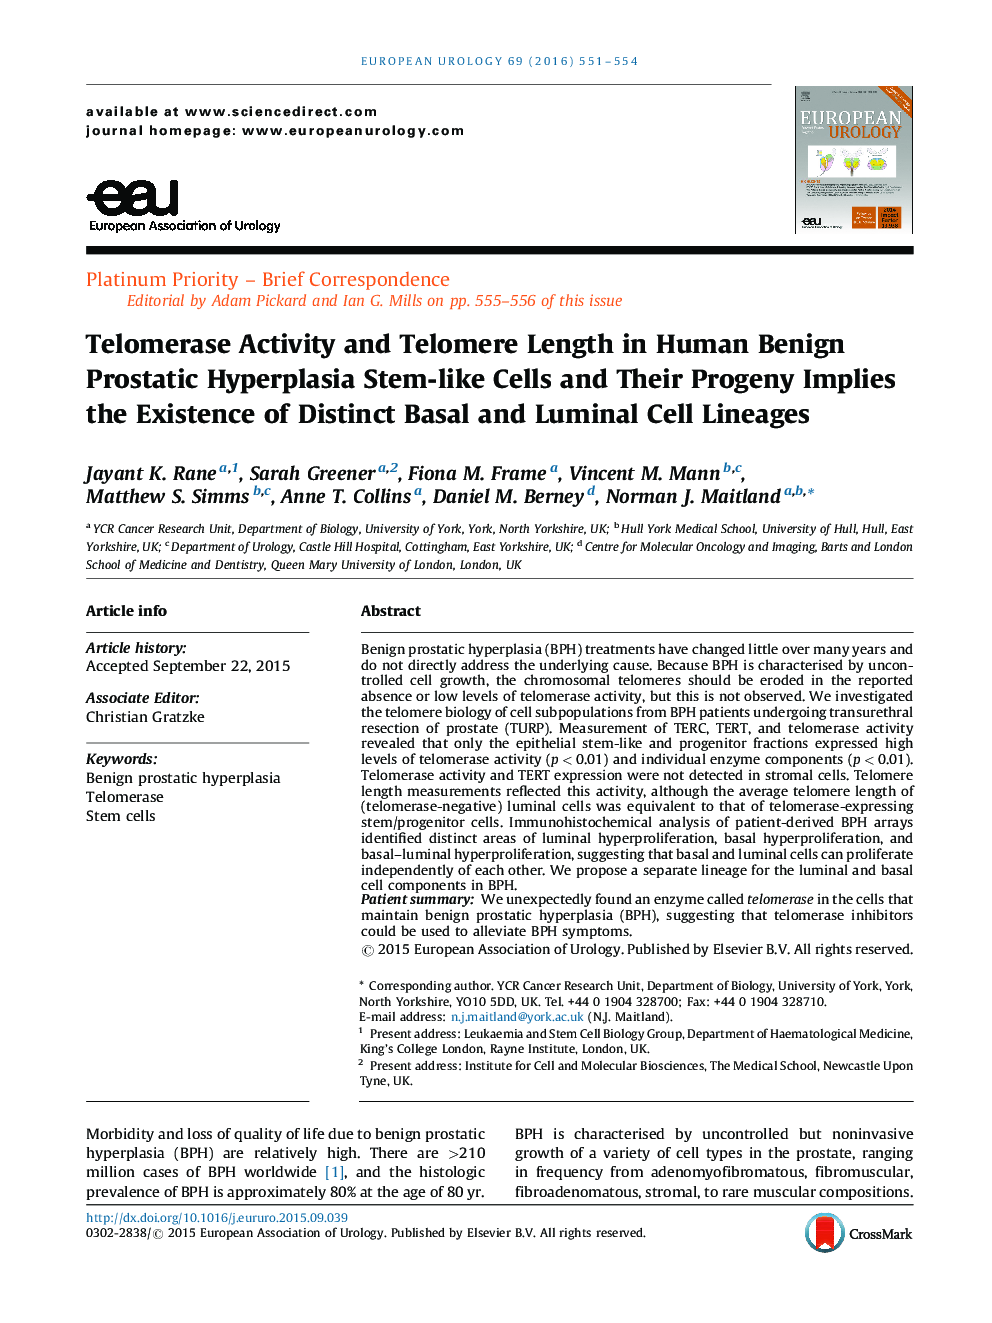 فعالیت تلومراز و طول تلومر در سلول های بنیادی خوش خیم پروستات هیپرالازی و سلول های بنیادی آنها از وجود سلول های بنیادی متمایز و لومینال 